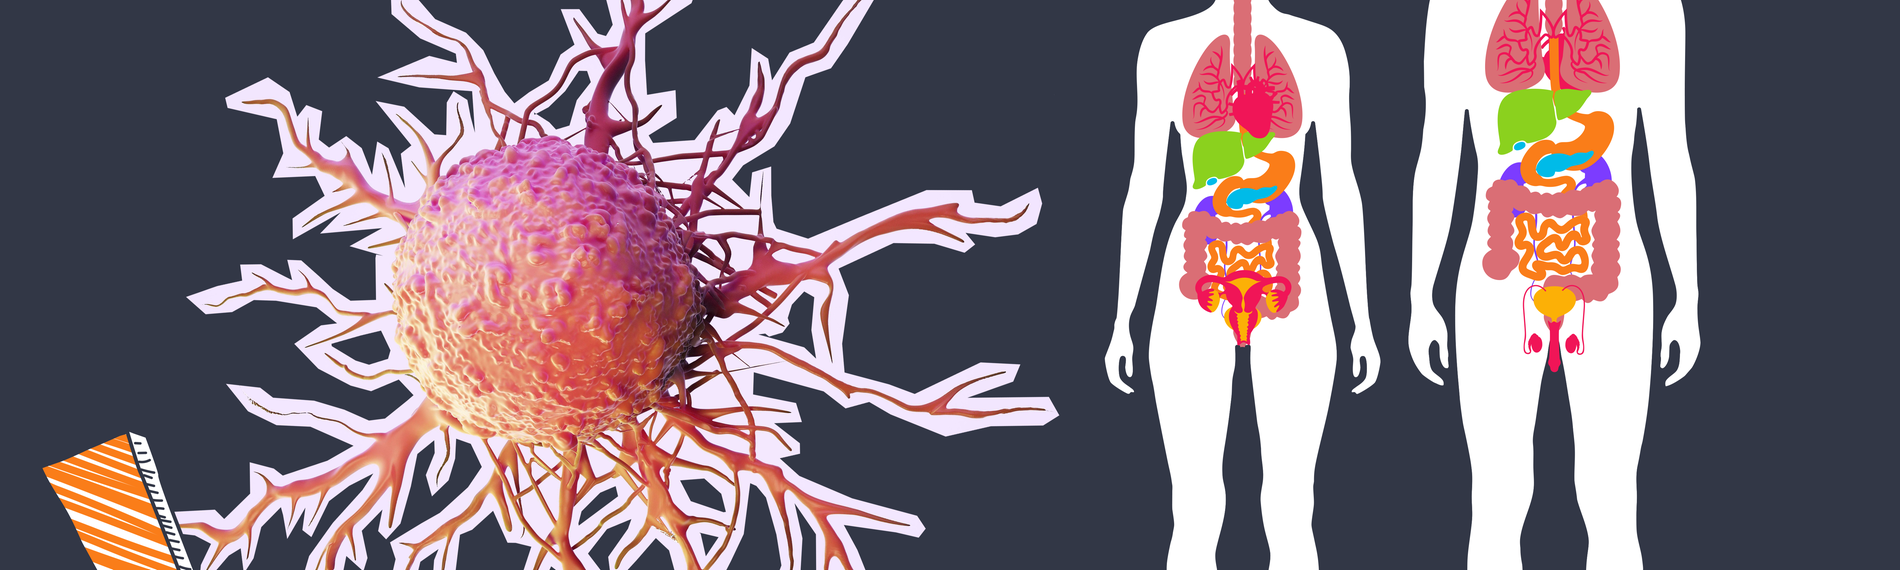 Grafik von eienr Krebszelle und zwei menschlichen Körpern und ein Ausrufezeichen